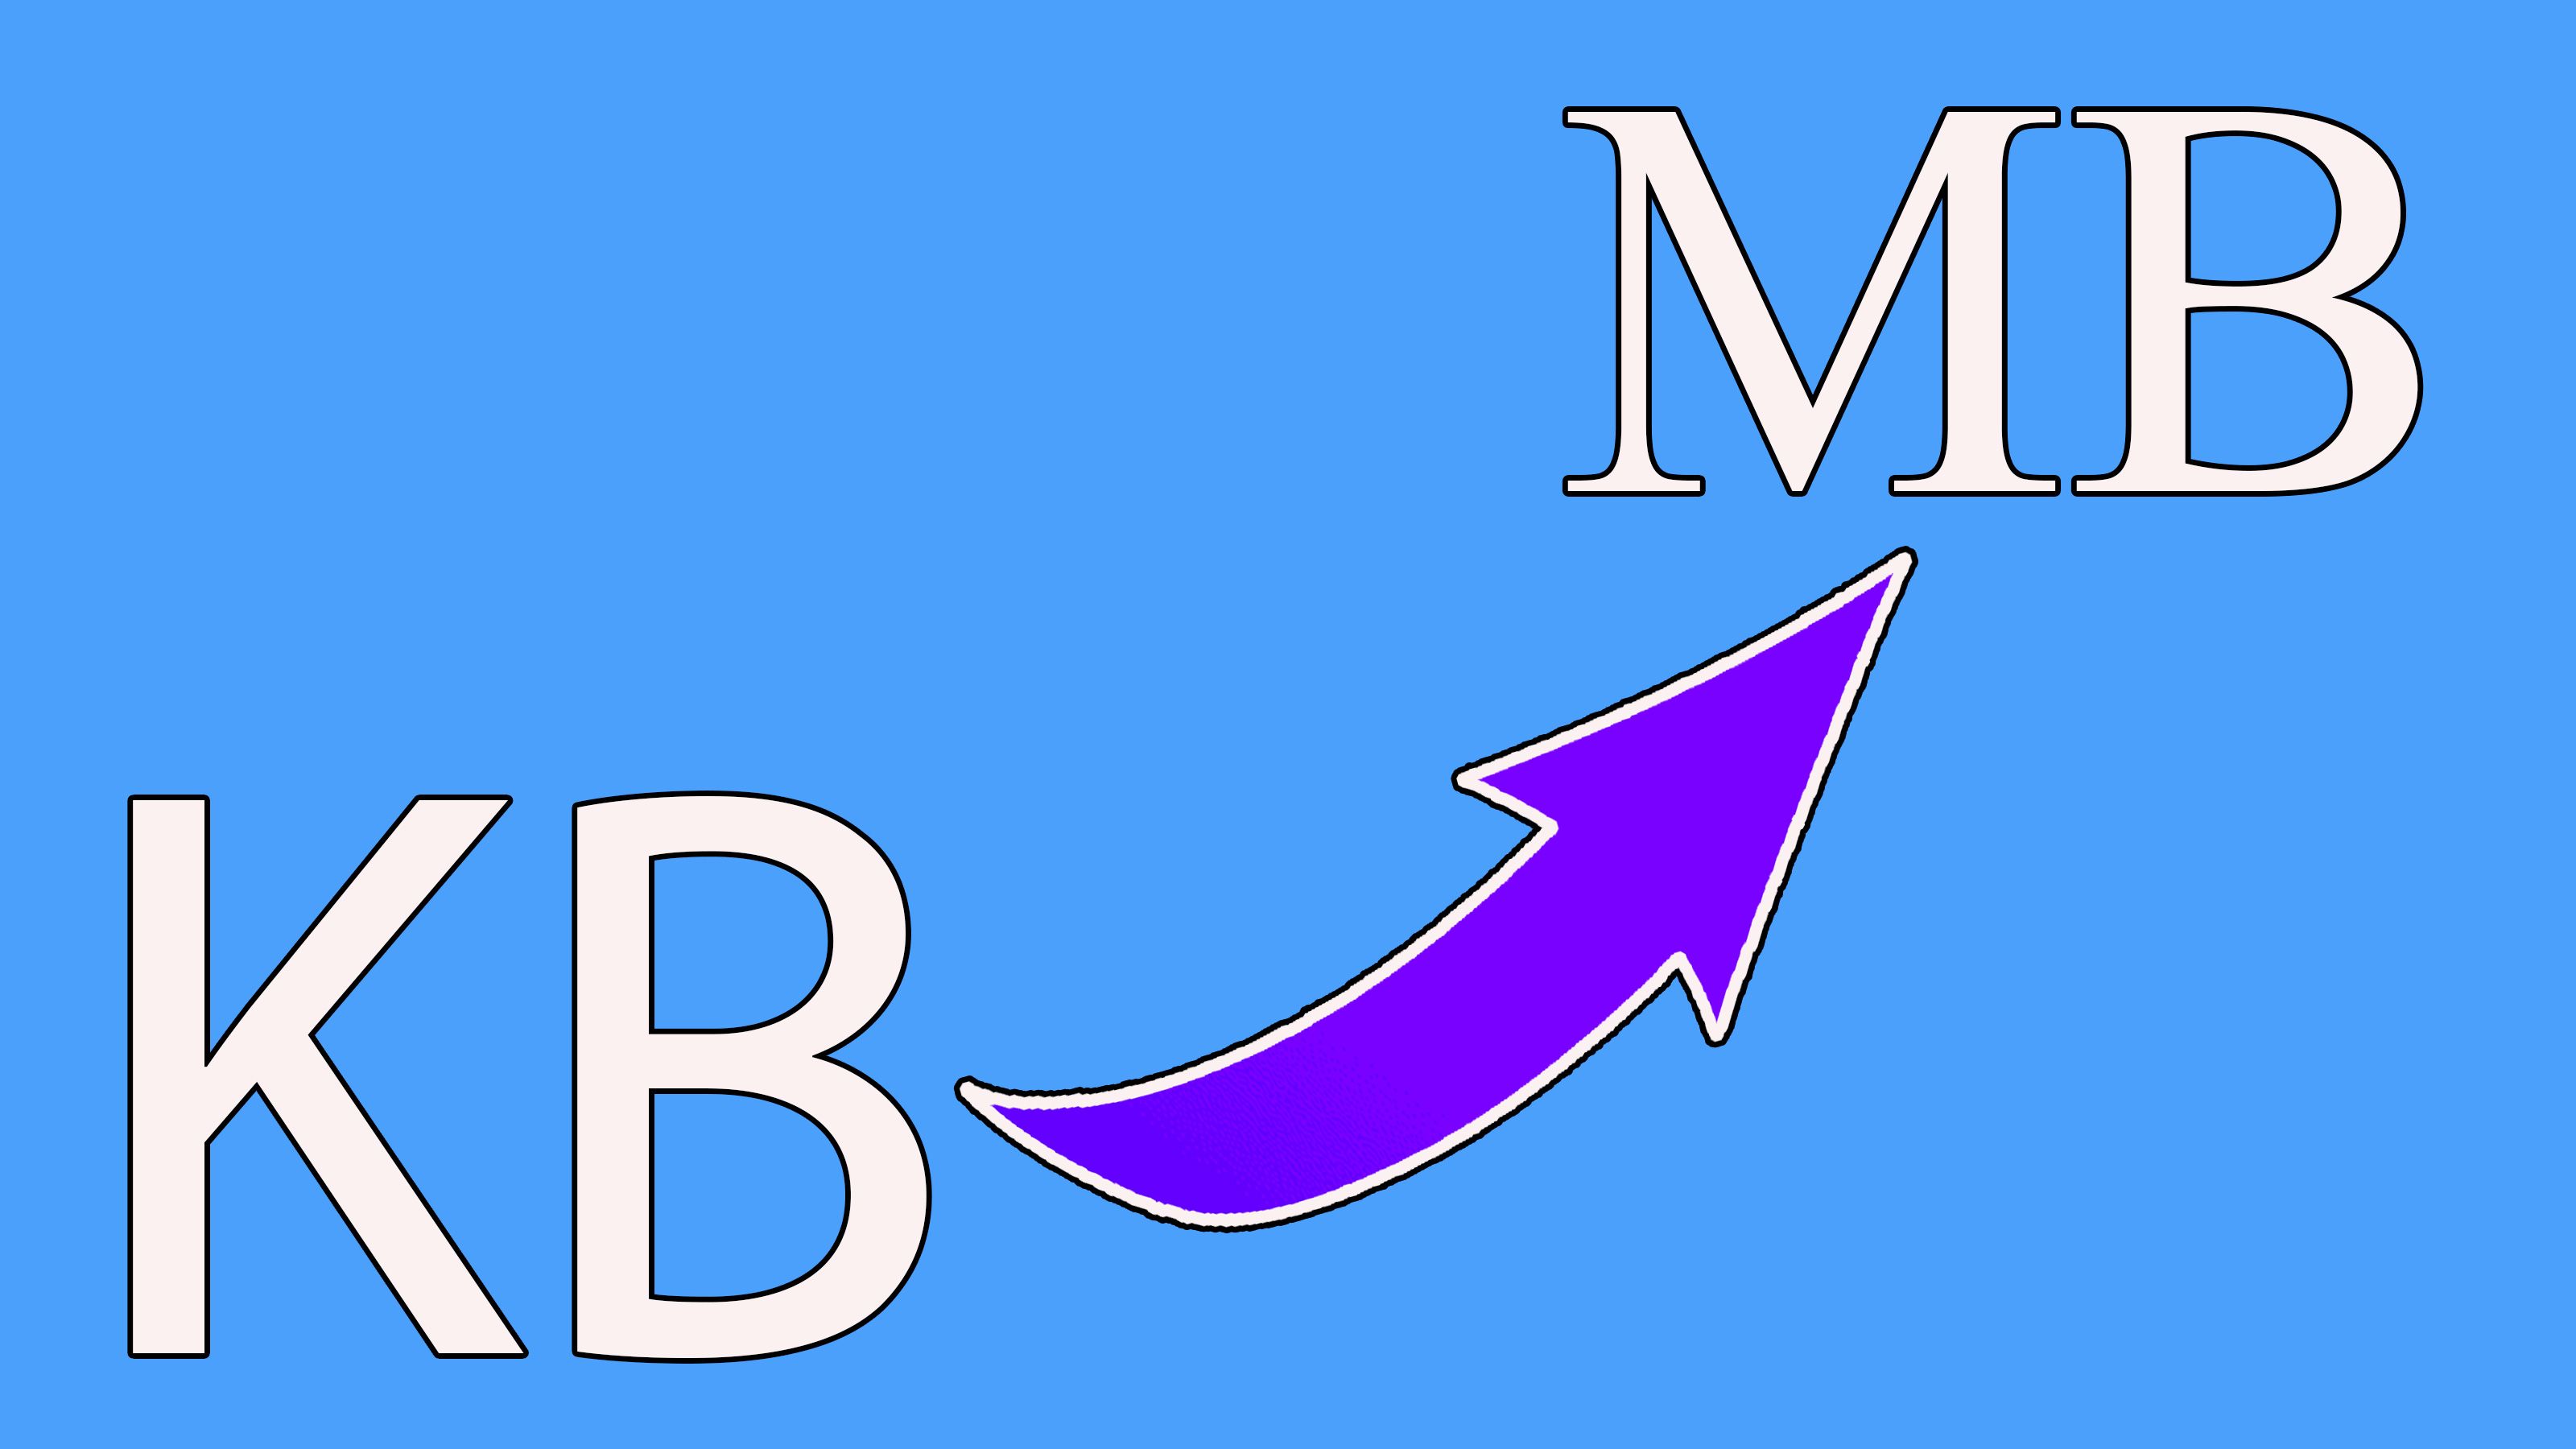 Vergroot de afbeeldingsgrootte van KB naar MB..